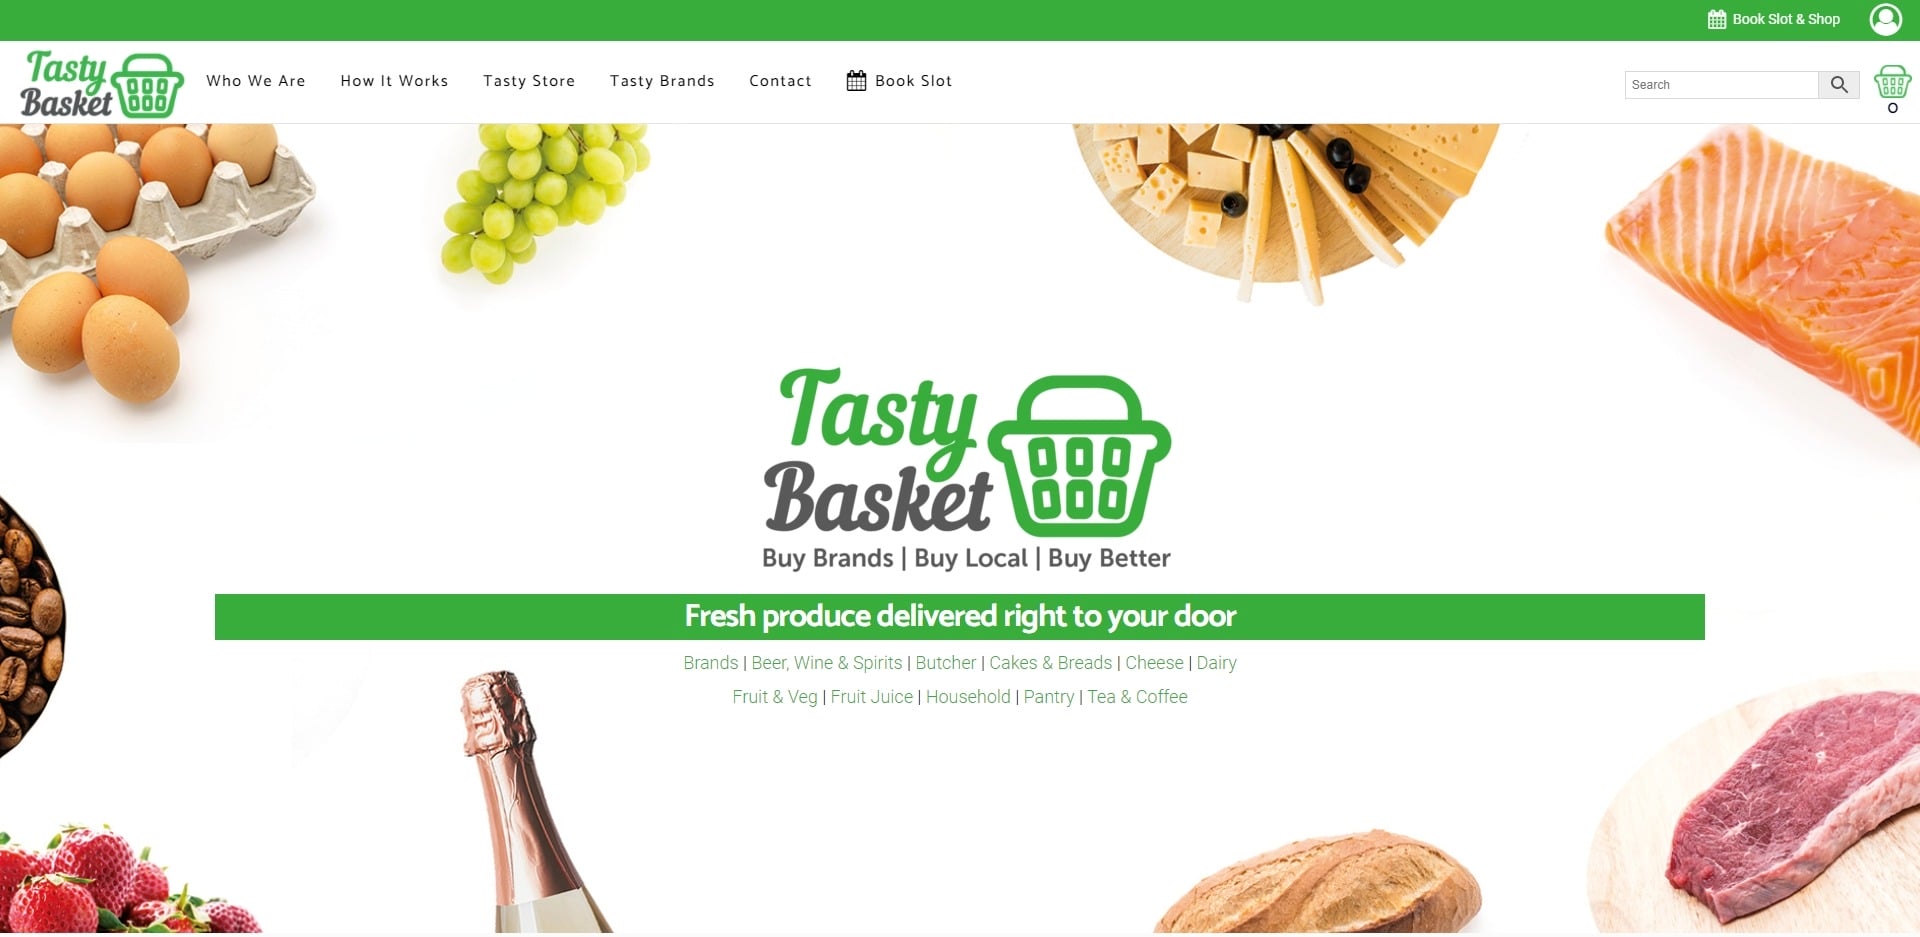 Tasty Basket Website Design